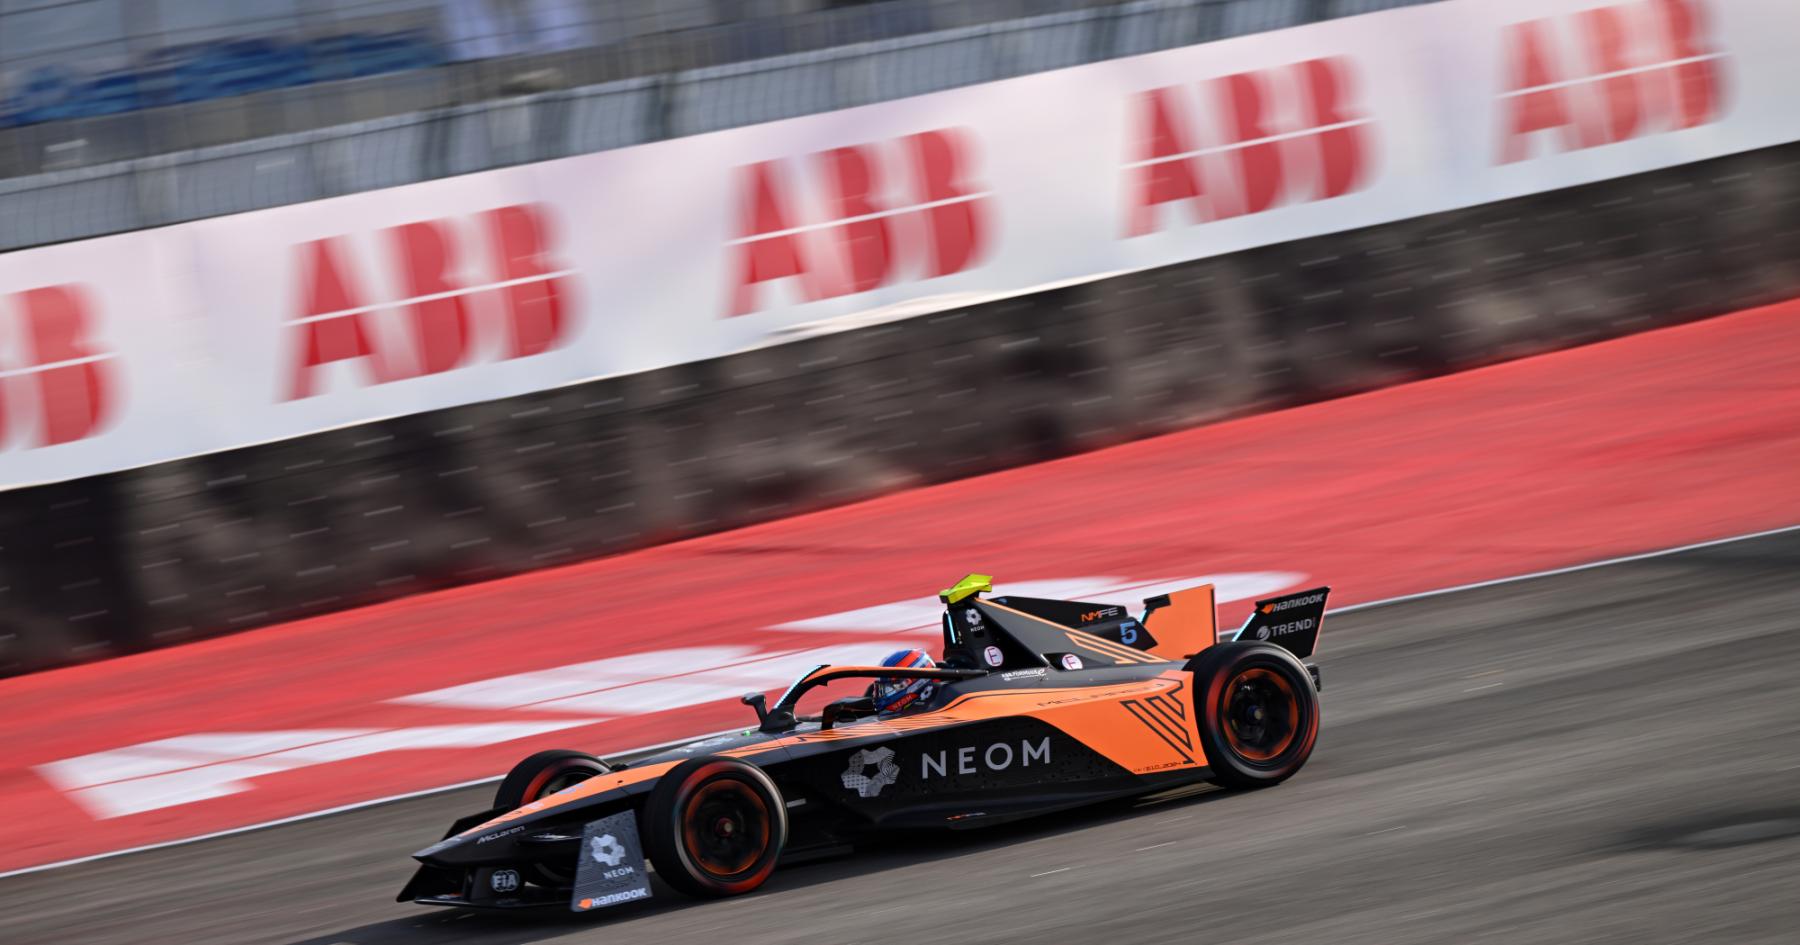 McLaren's 'weakness' present despite maiden victory